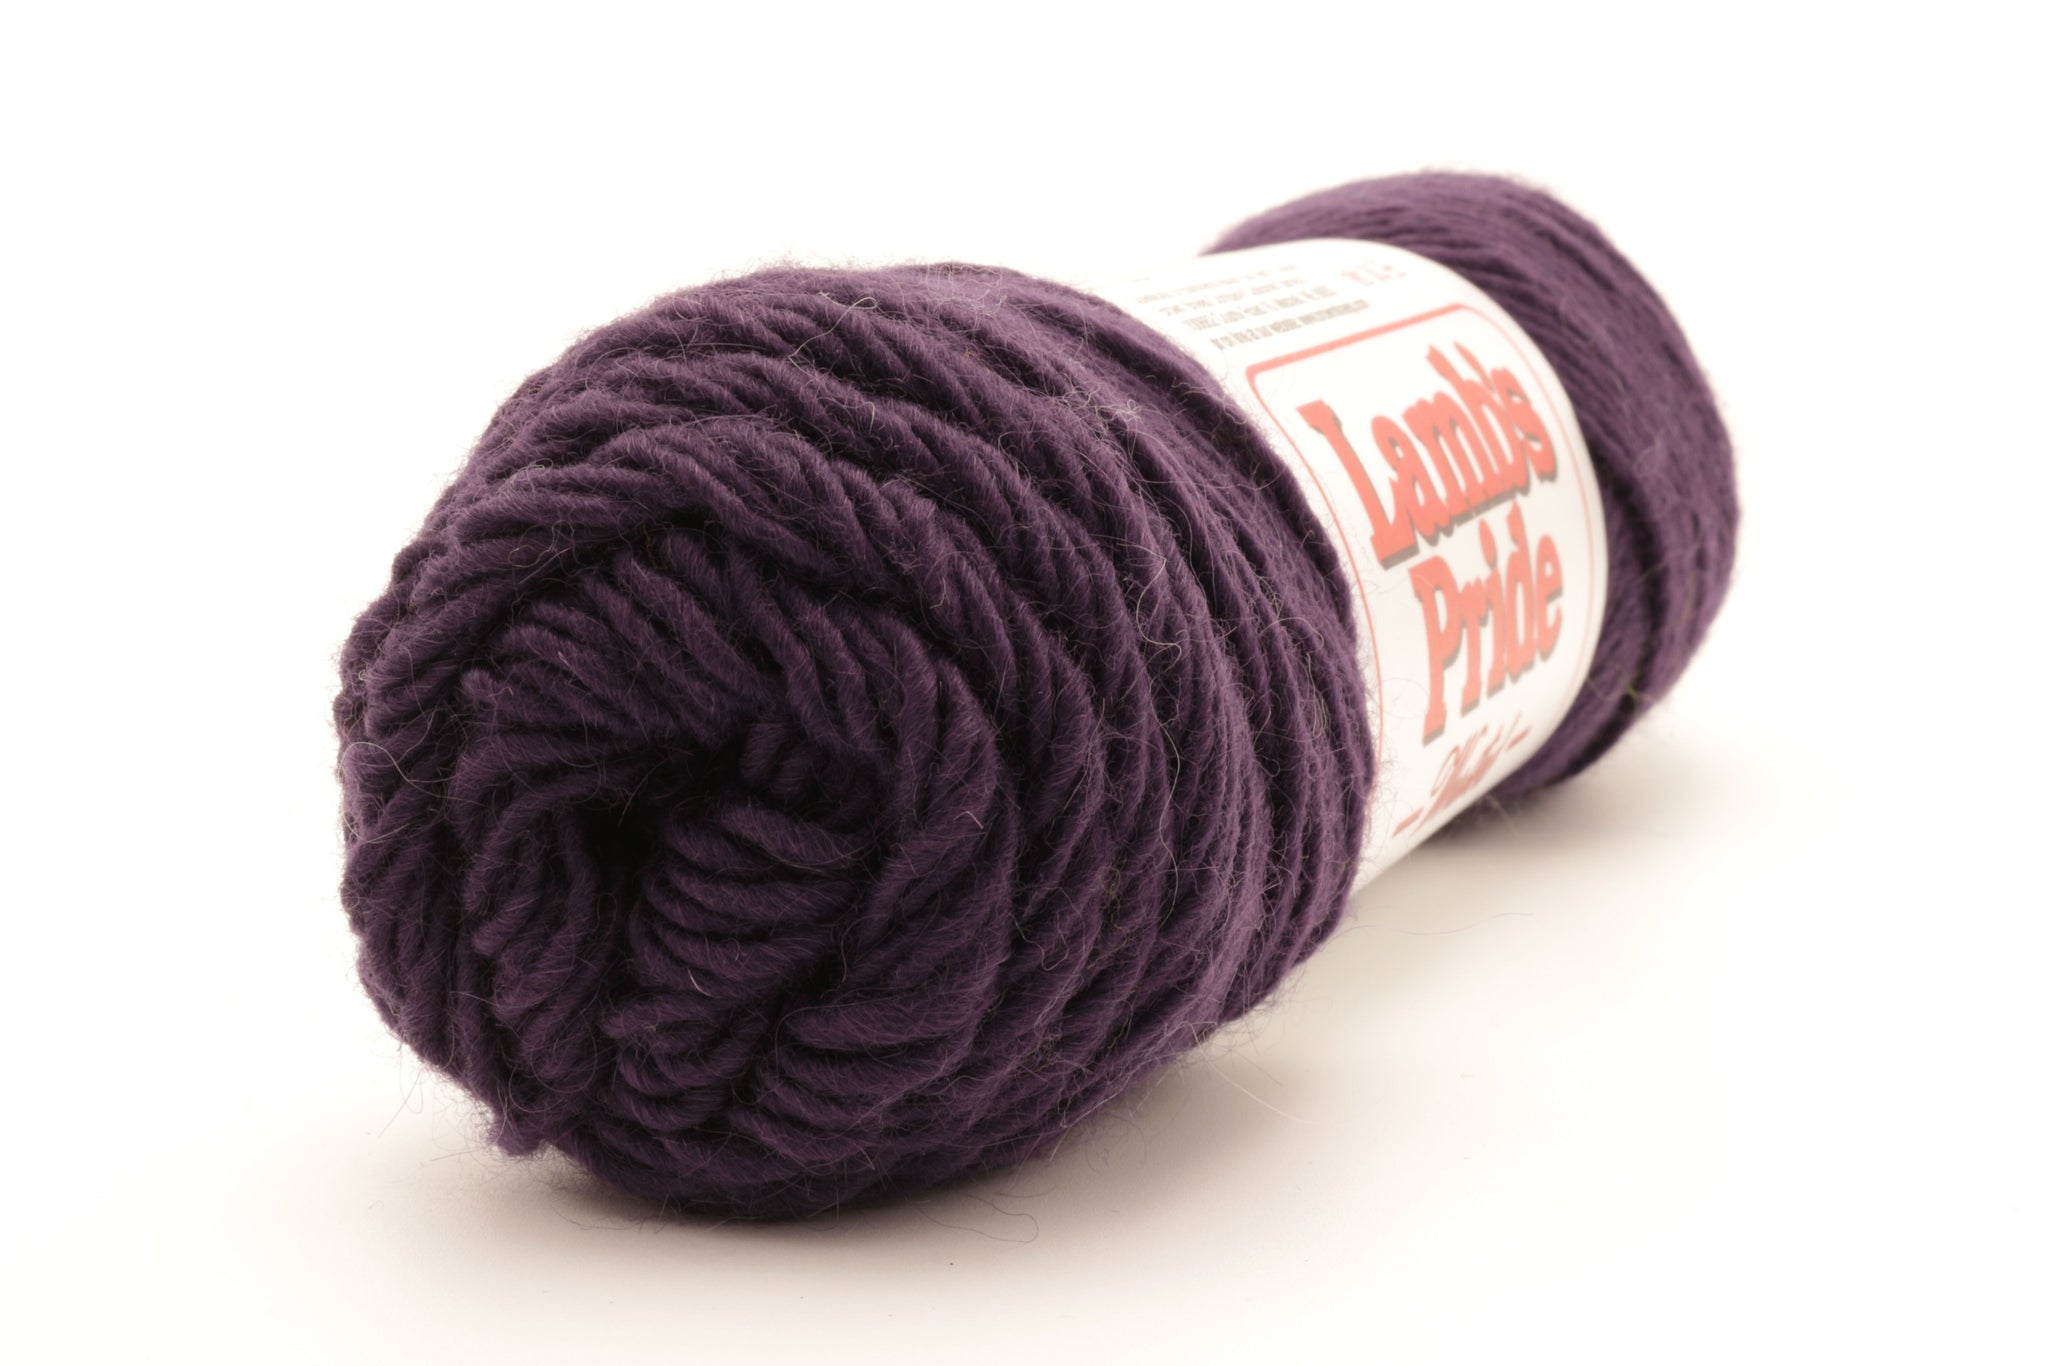 Eucalan Soap Woolwash, Large, - Black Sheep Knitting LLC